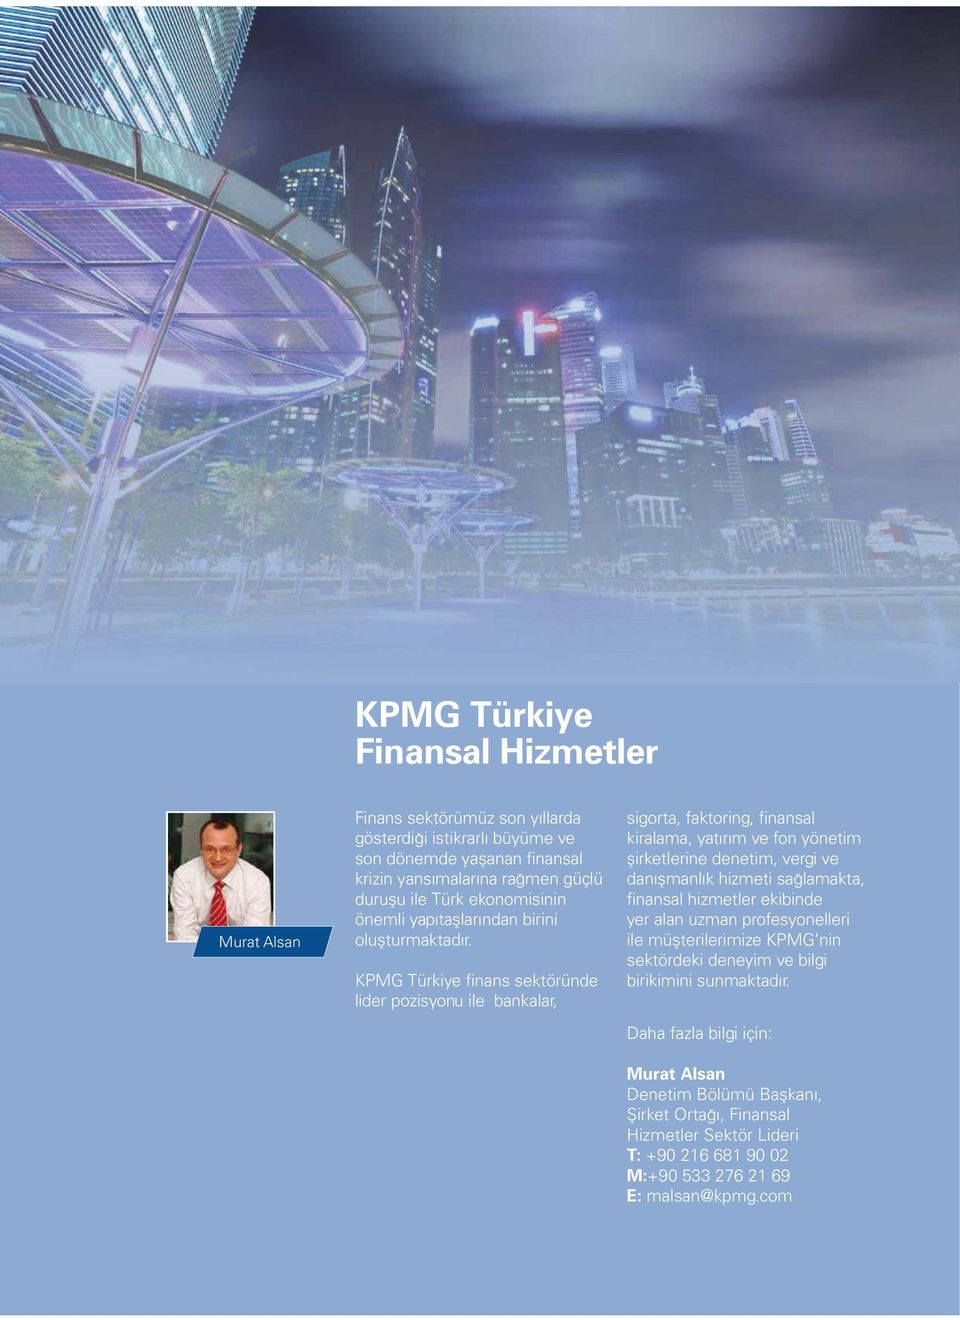 KPMG Türkiye finans sektöründe lider pozisyonu ile bankalar, sigorta, faktoring, finansal kiralama, yatırım ve fon yönetim şirketlerine denetim, vergi ve danışmanlık hizmeti sağlamakta,